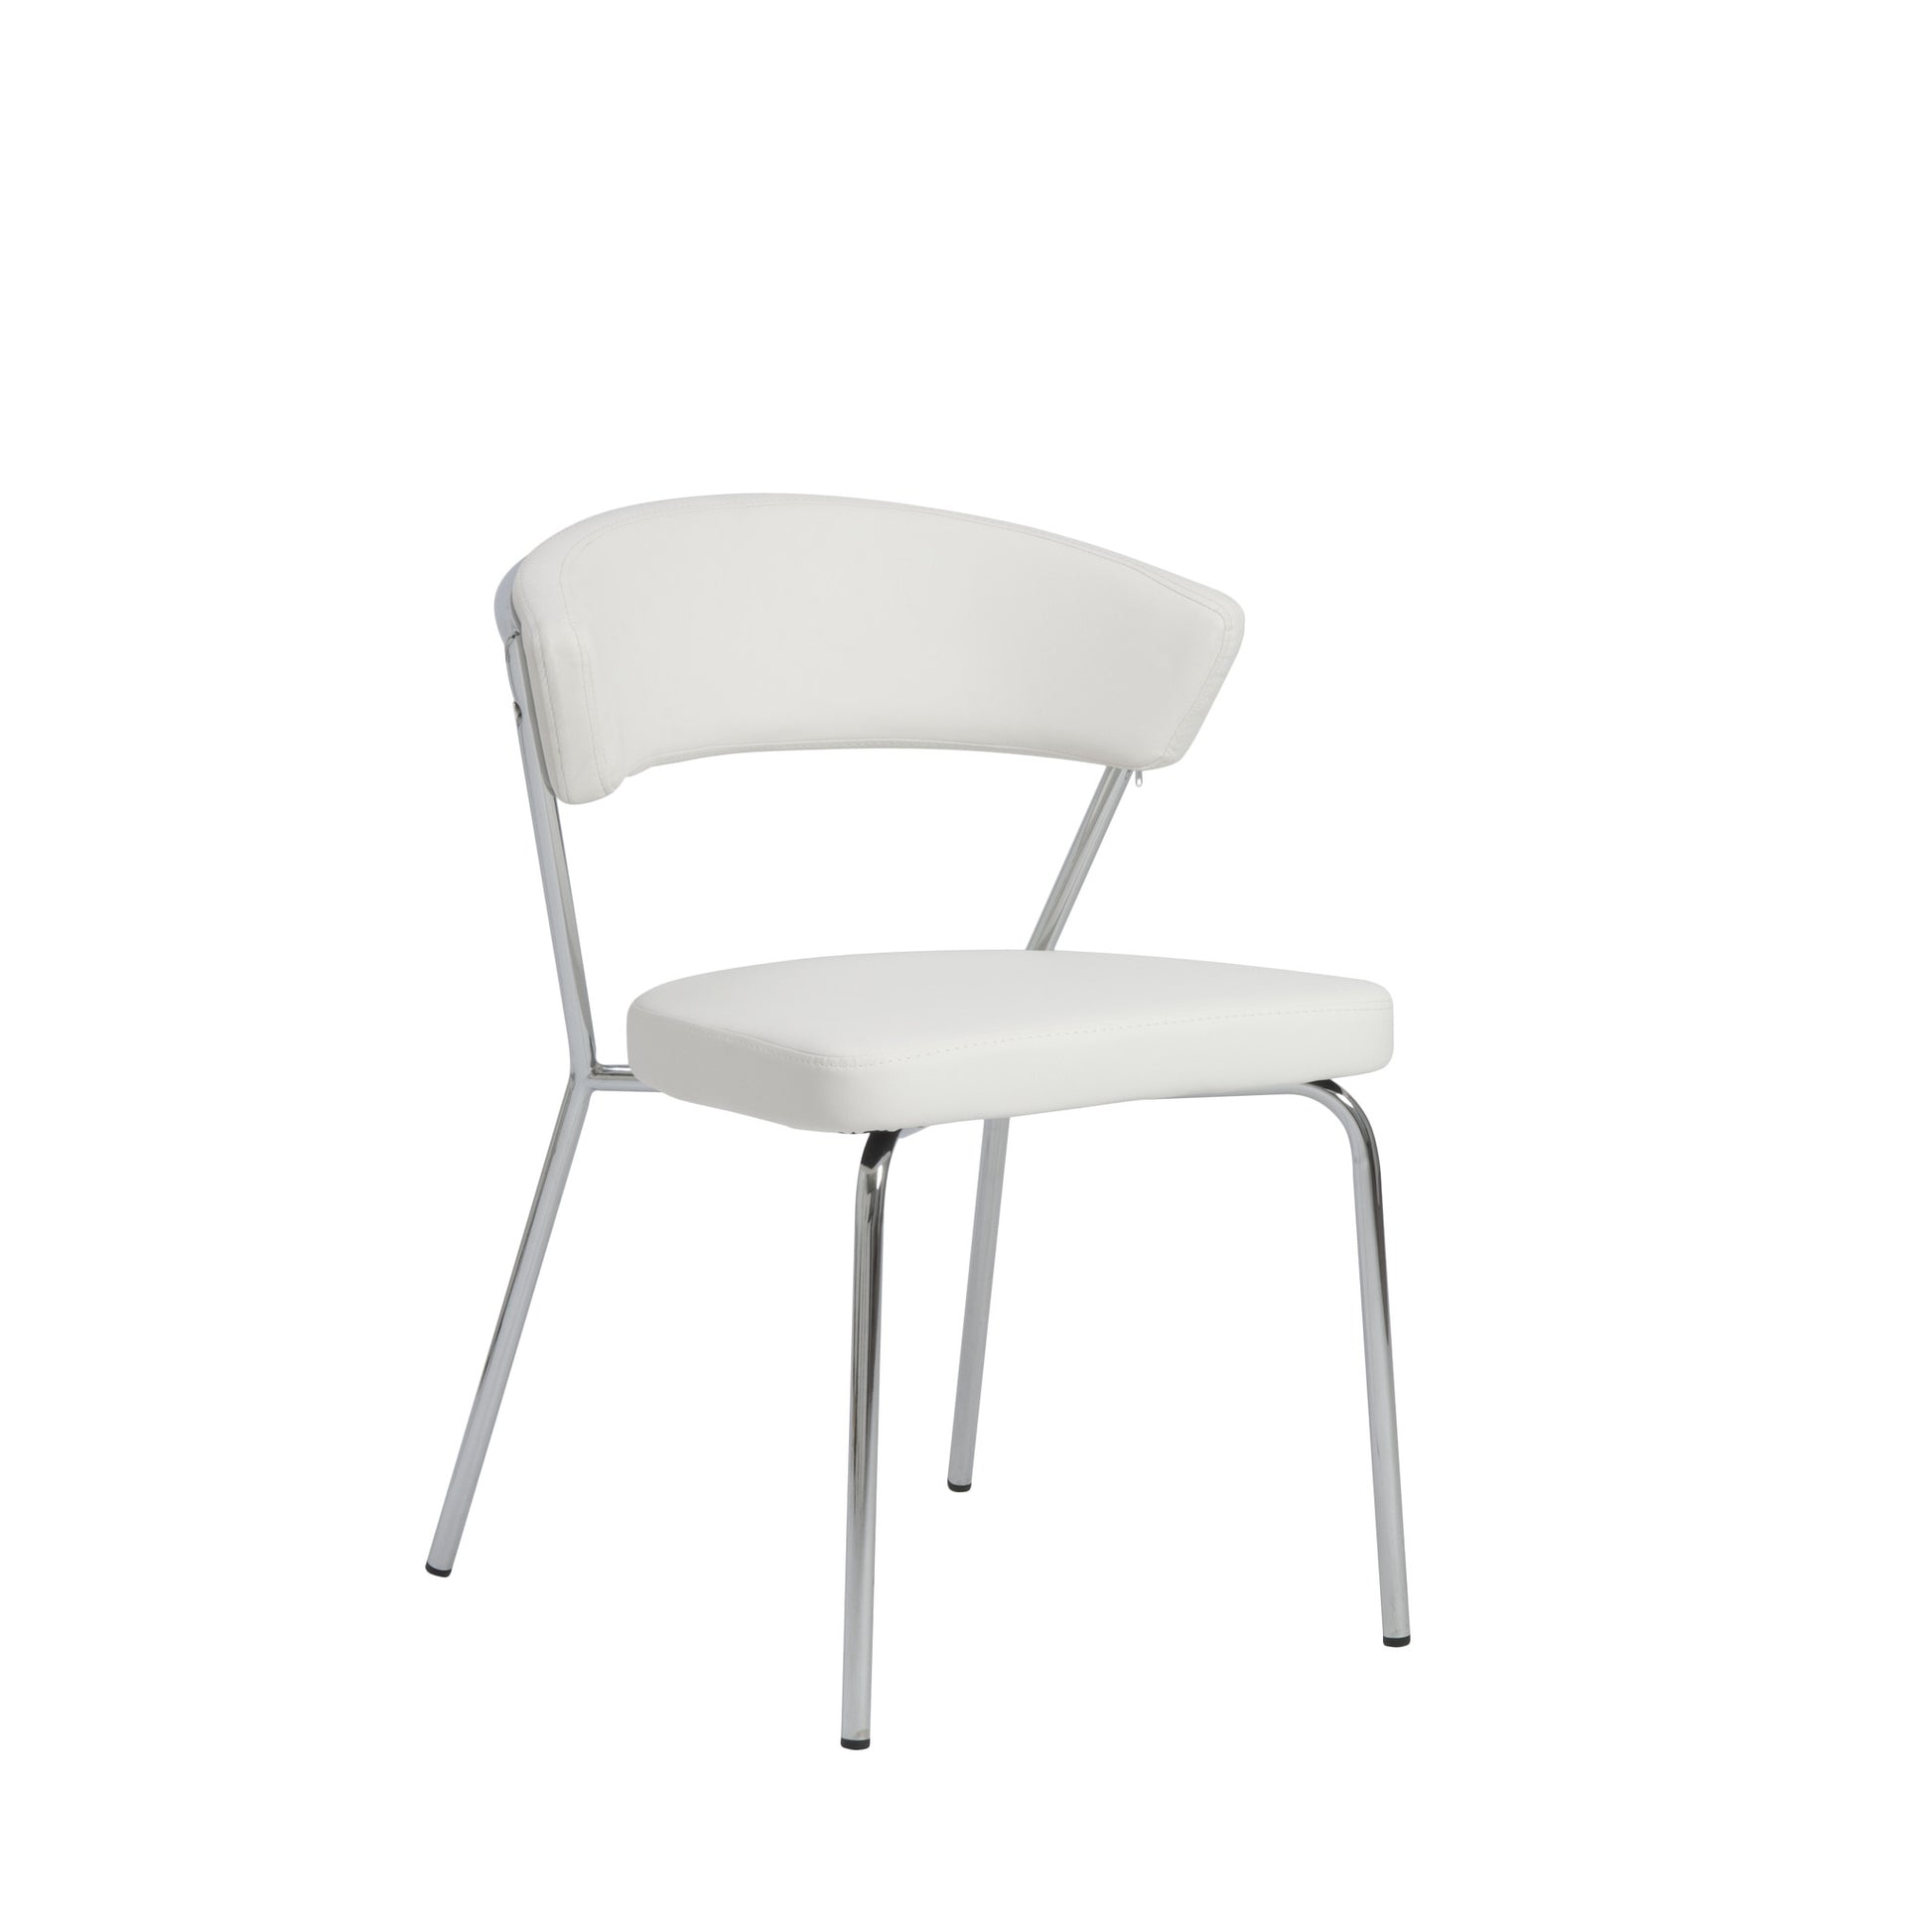 05095 Draco Dining Chair/ Chrome Legs - Eurohaus Modern Furniture LLC